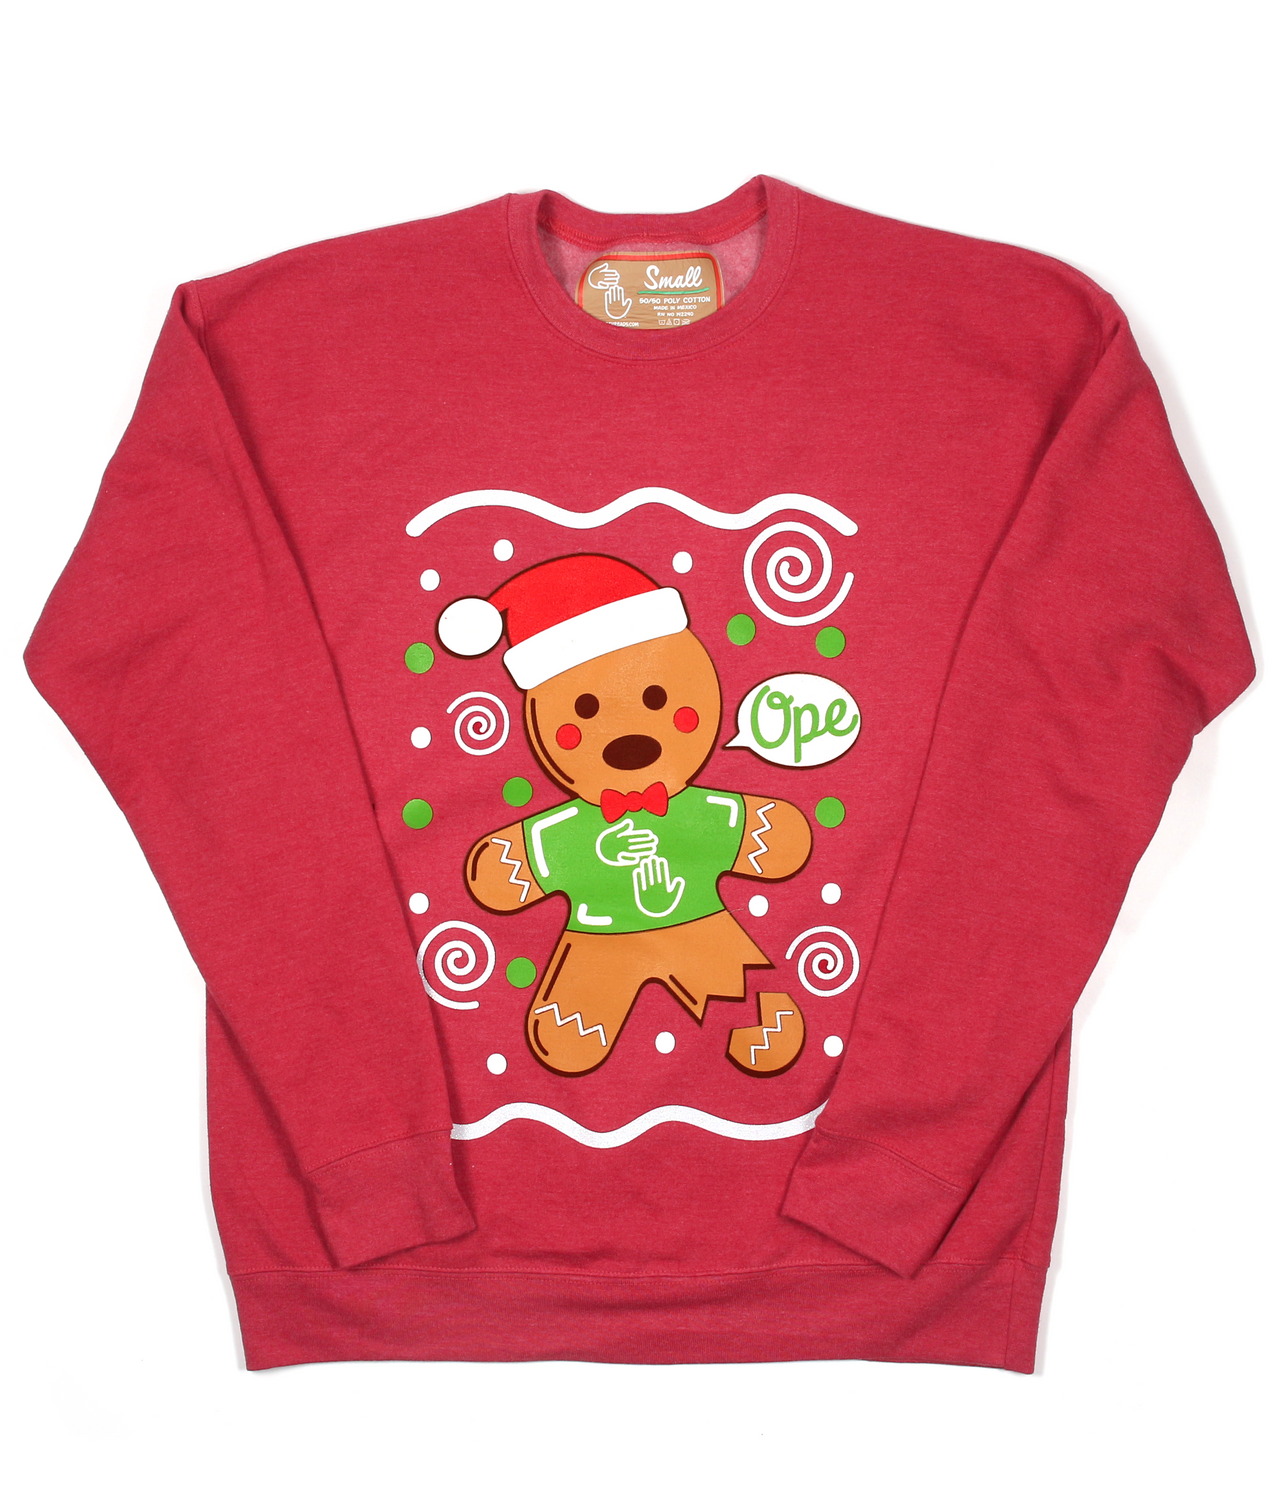 Not-So-Ugly Christmas Sweatshirt